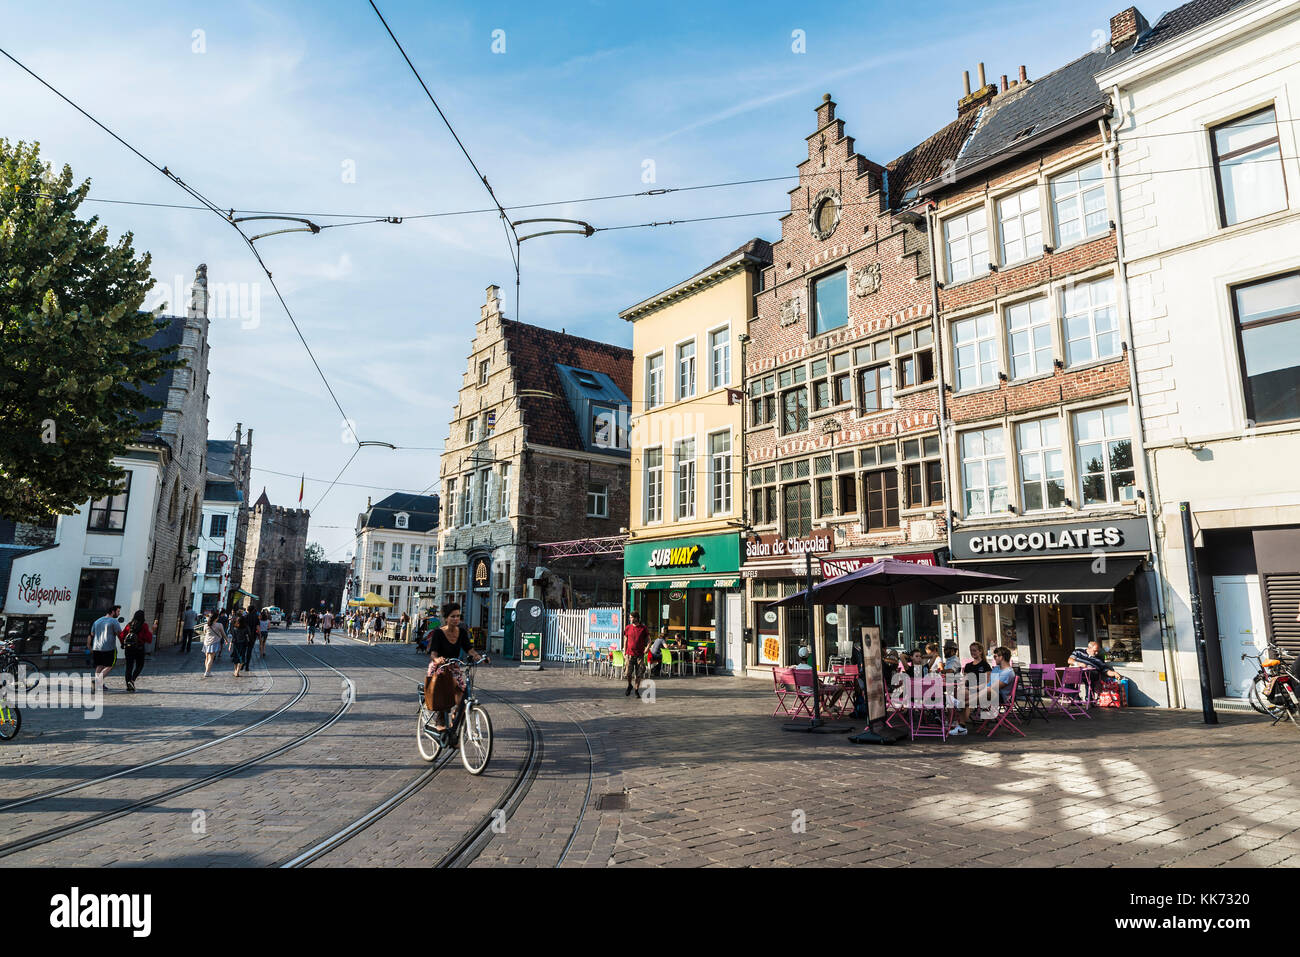 Gand, Belgique - 28 août 2017 : les gens dans un bar boire un verre et de marcher dans une rue de la vieille ville de la cité médiévale de Gand, Belgique Banque D'Images